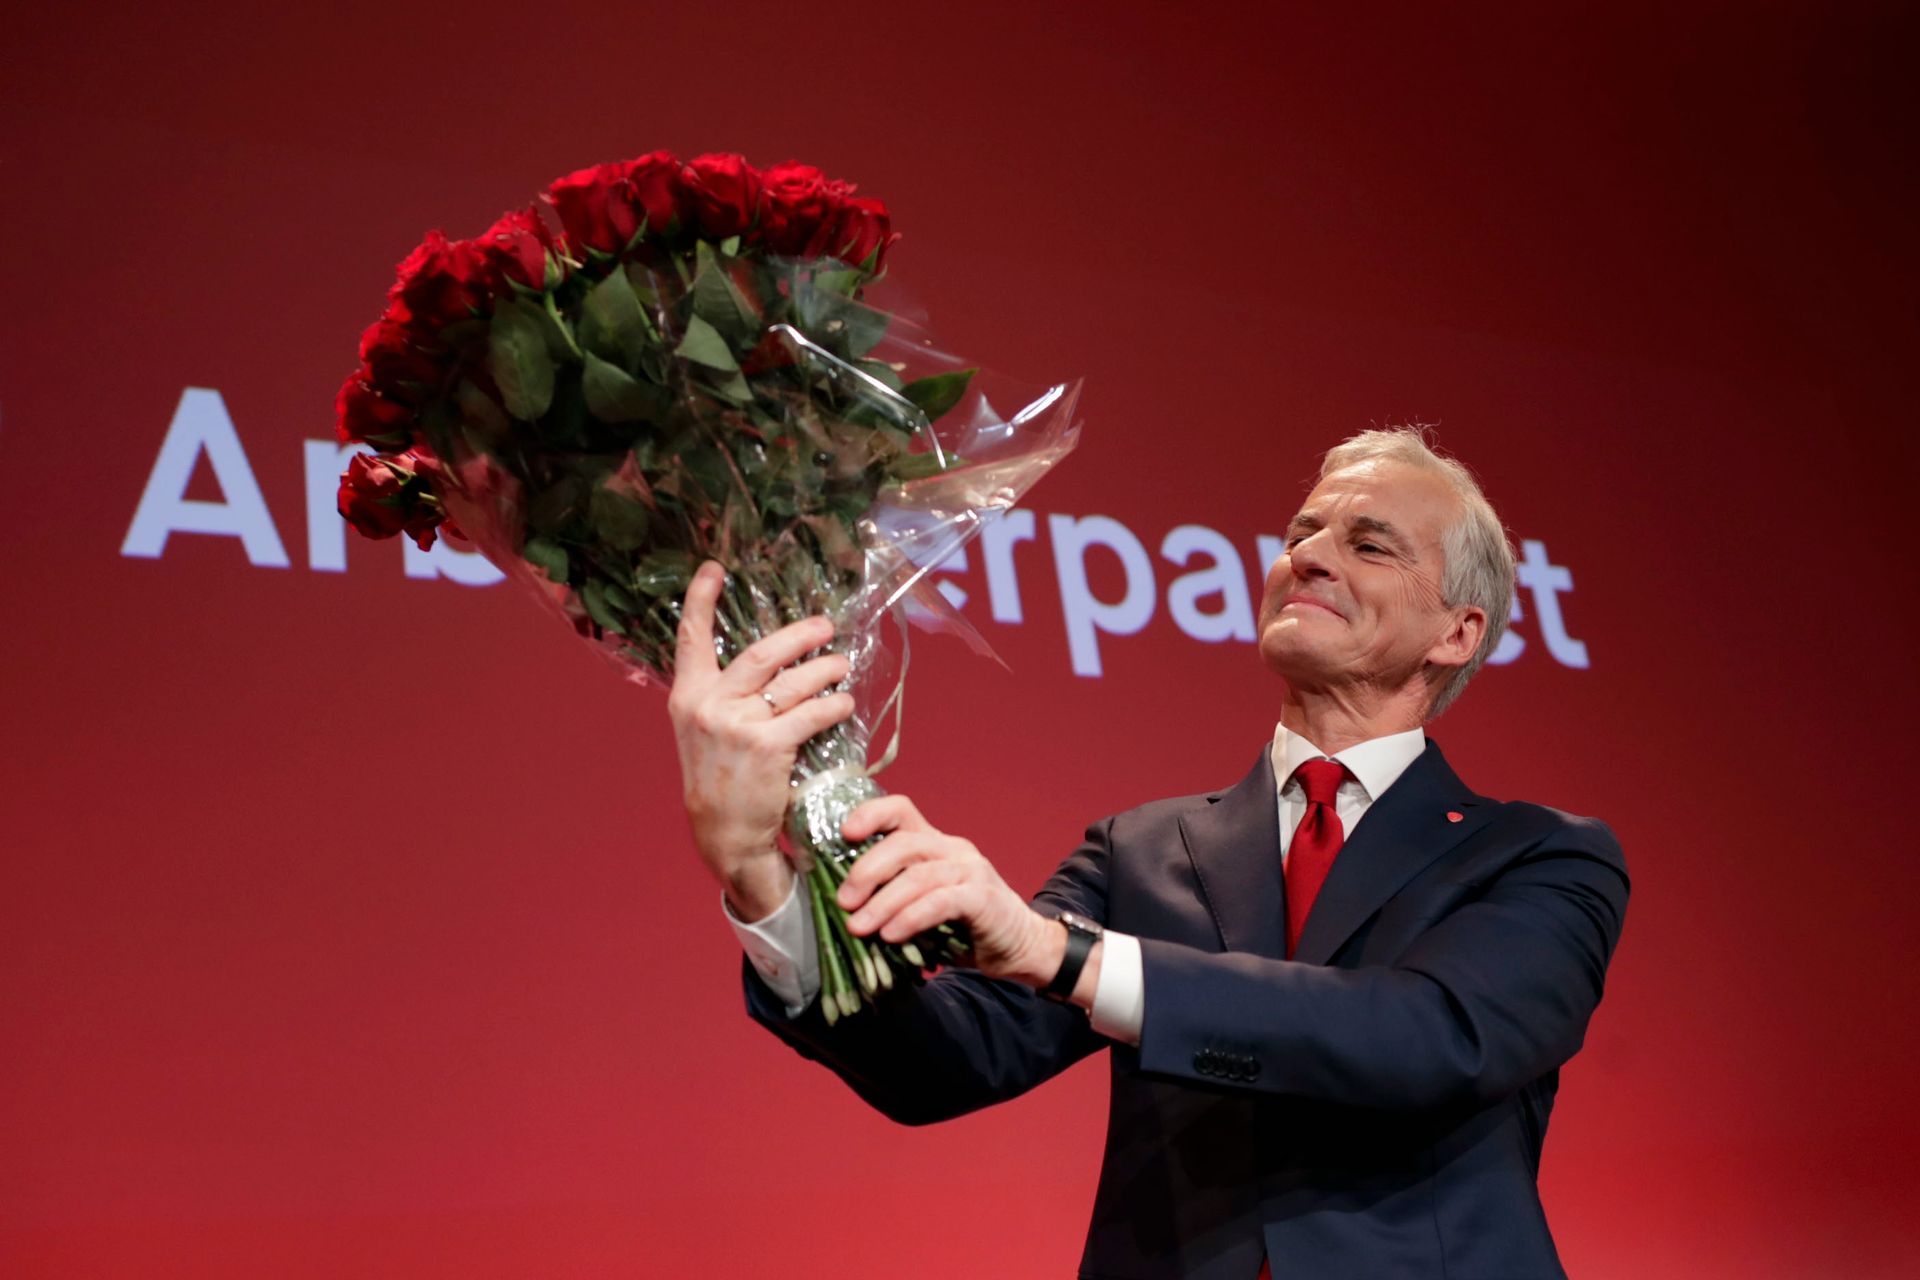 Støre ses nedenifra, mens han står foran en rød vegg med Aps logo, på scenen under Aps valgvake, og ser på den store rosebuketten han løfter opp foran seg.